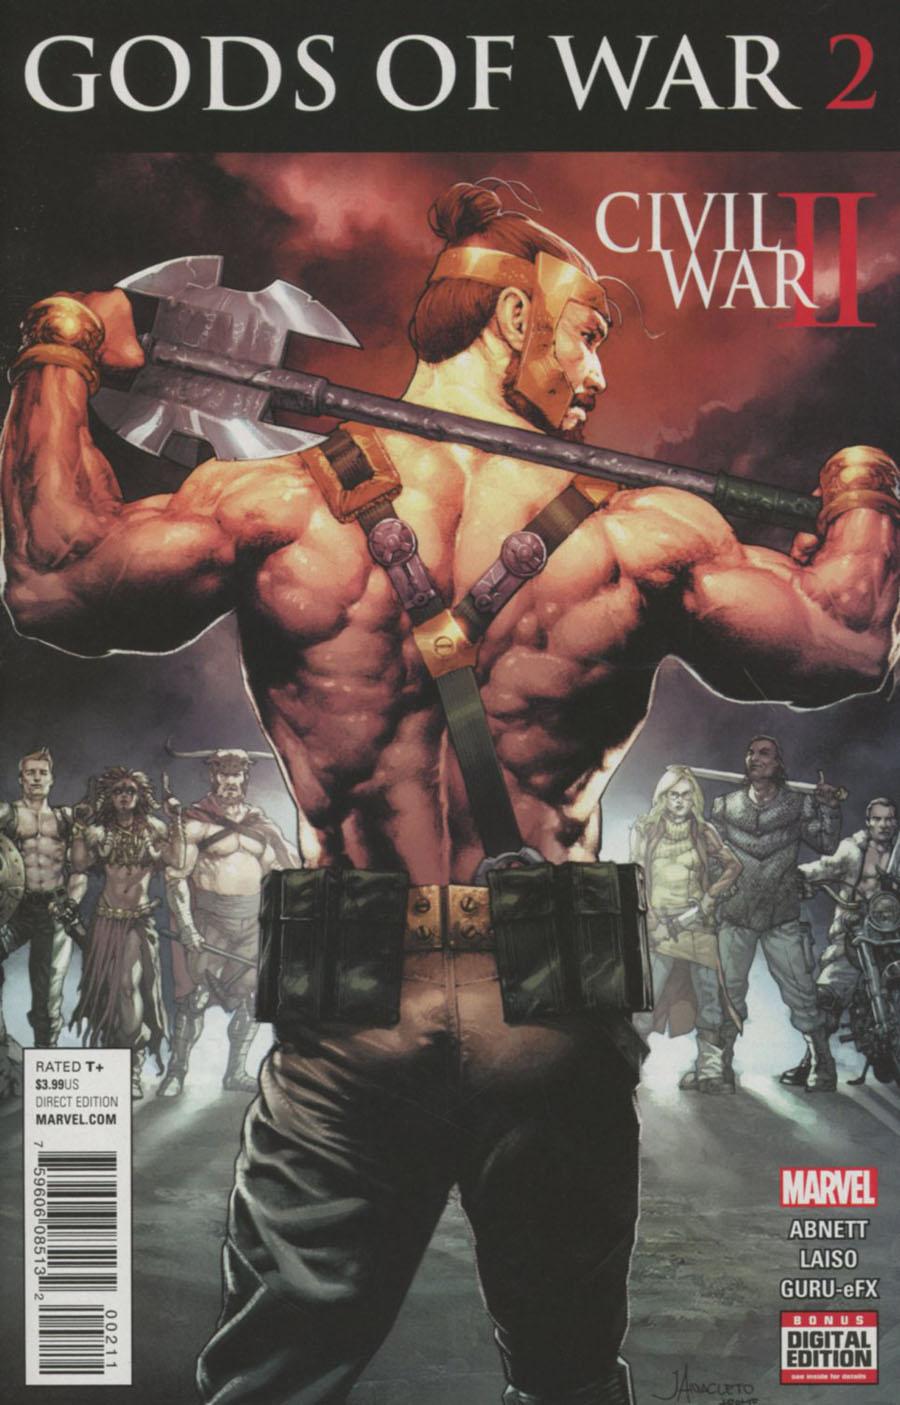 Civil War II Gods Of War Vol. 1 #2